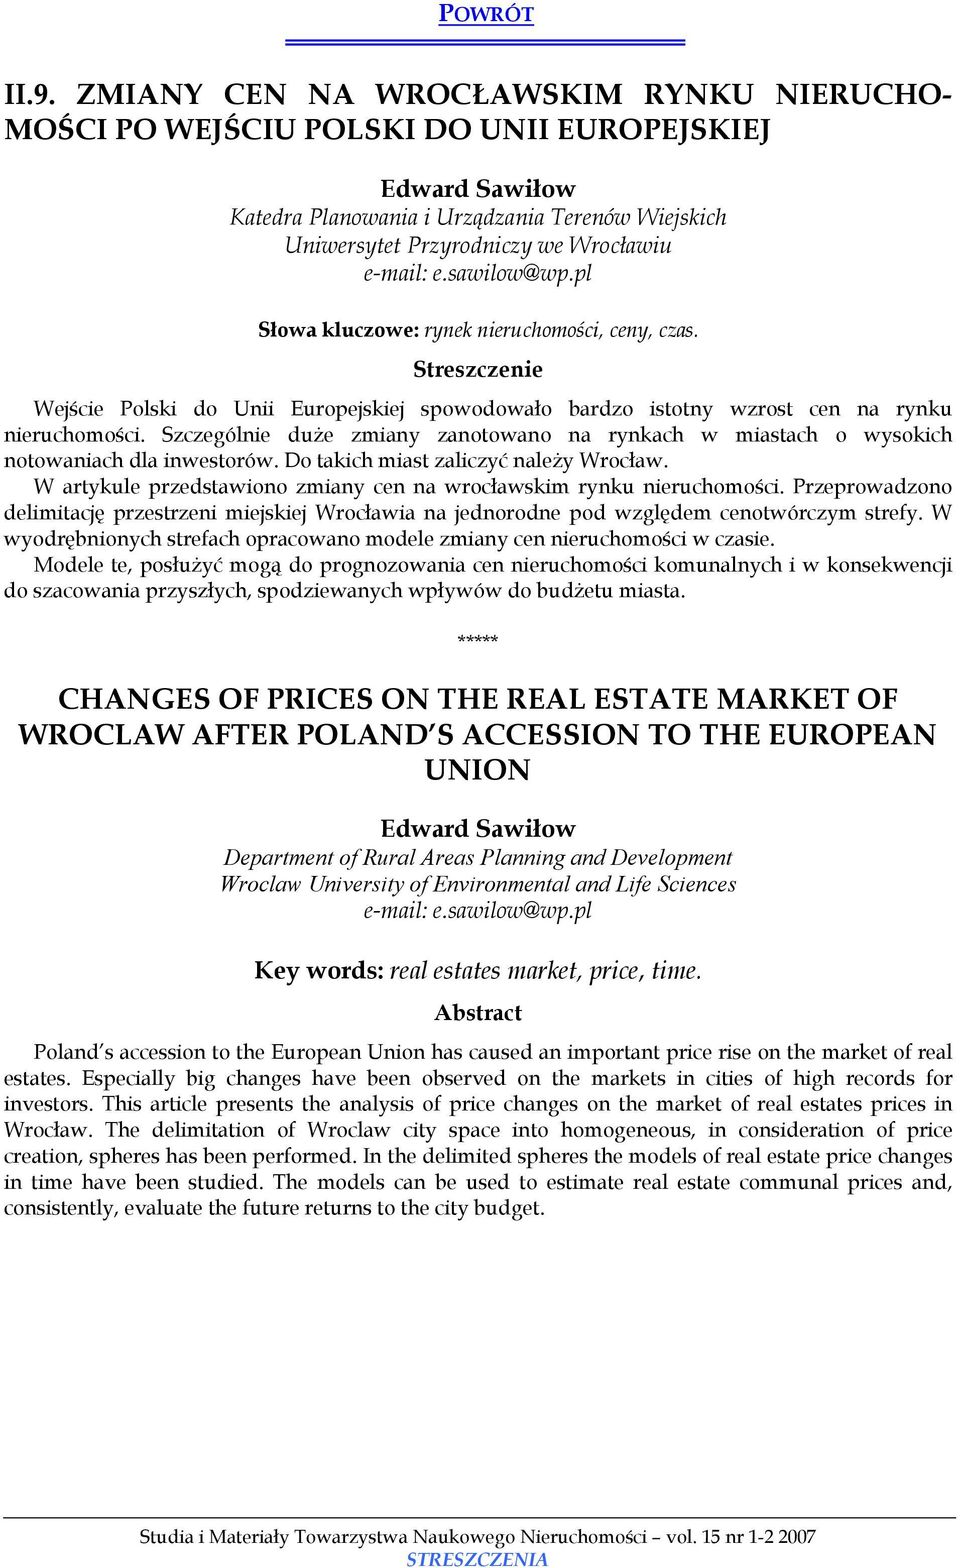 Szczególnie duże zmiany zanotowano na rynkach w miastach o wysokich notowaniach dla inwestorów. Do takich miast zaliczyć należy Wrocław.